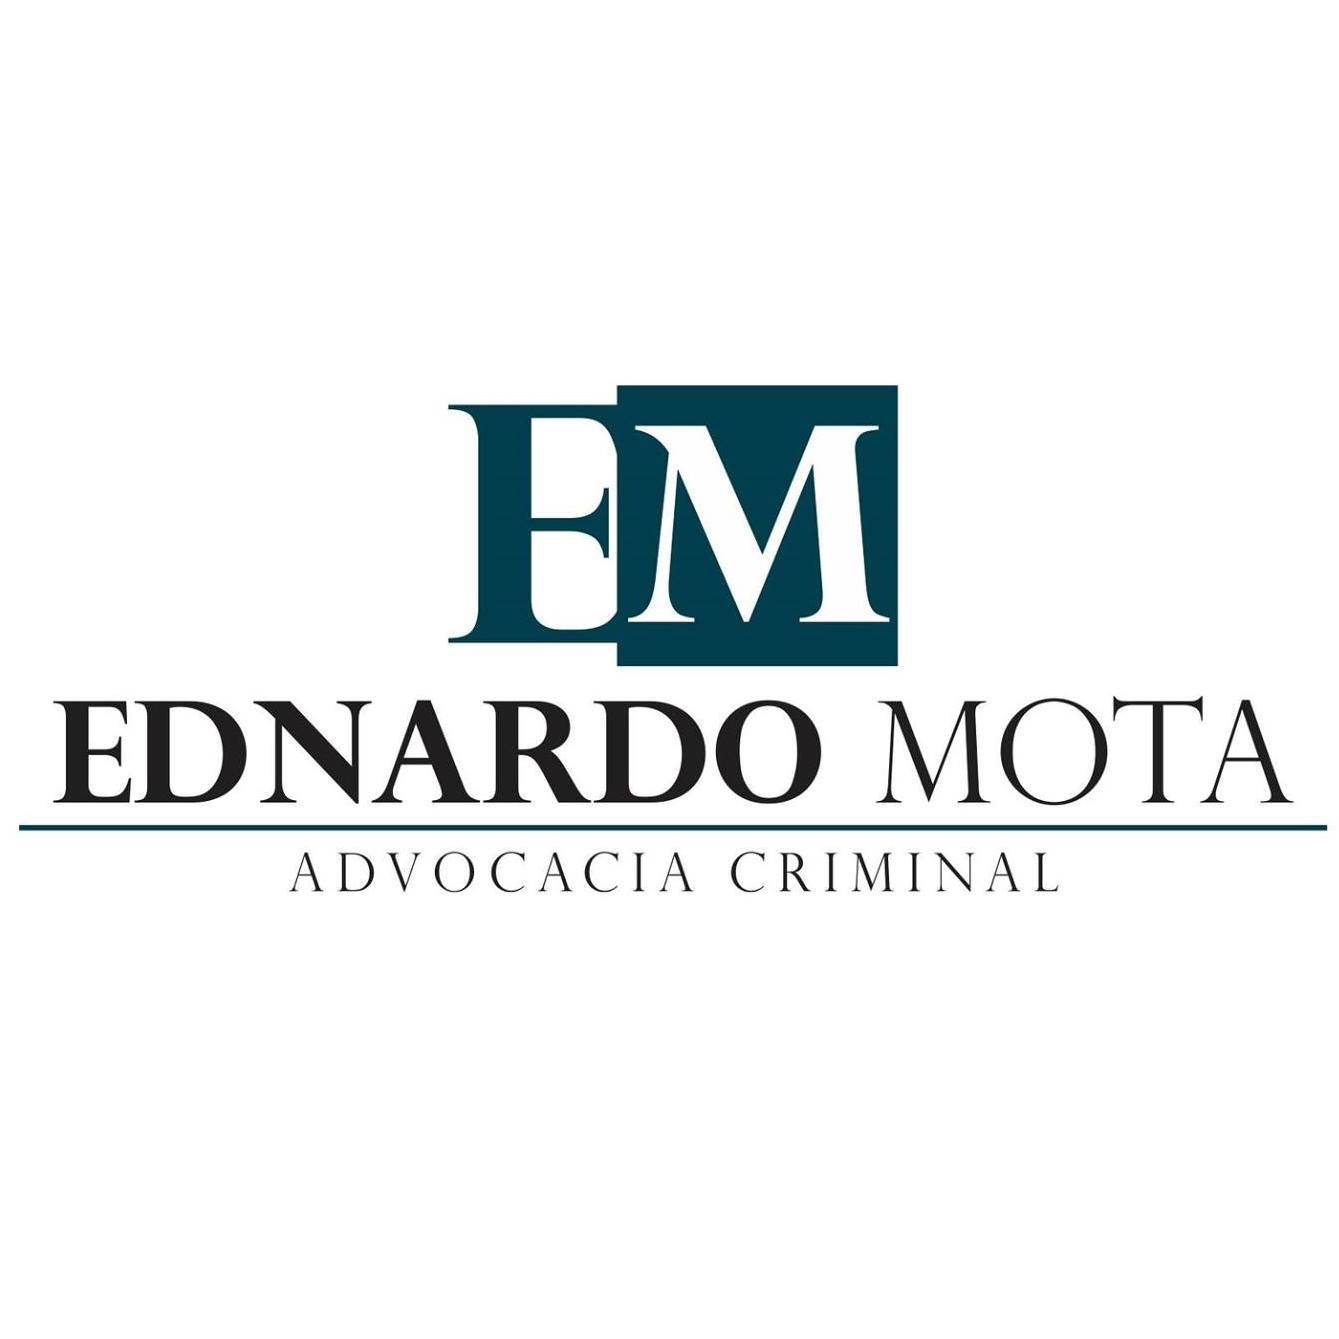 ADVOGADO CRIMINALISTA RJ - EDNARDO MOTA ADVOCACIA CRIMINAL - Advogados - Causas Criminais - Rio de Janeiro, RJ